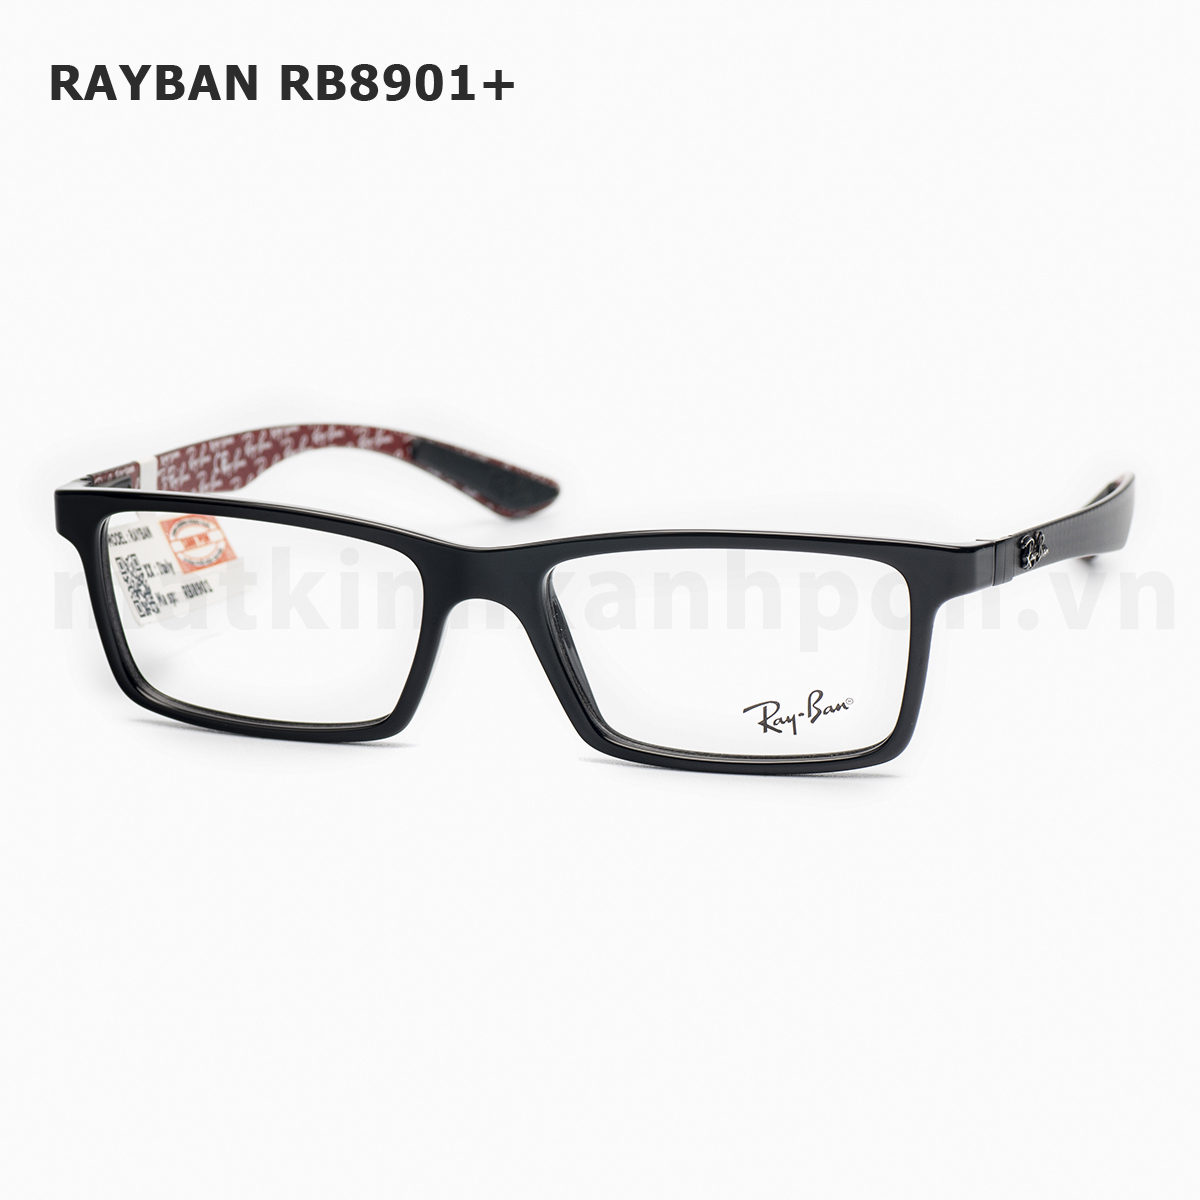 Rayban RB8901